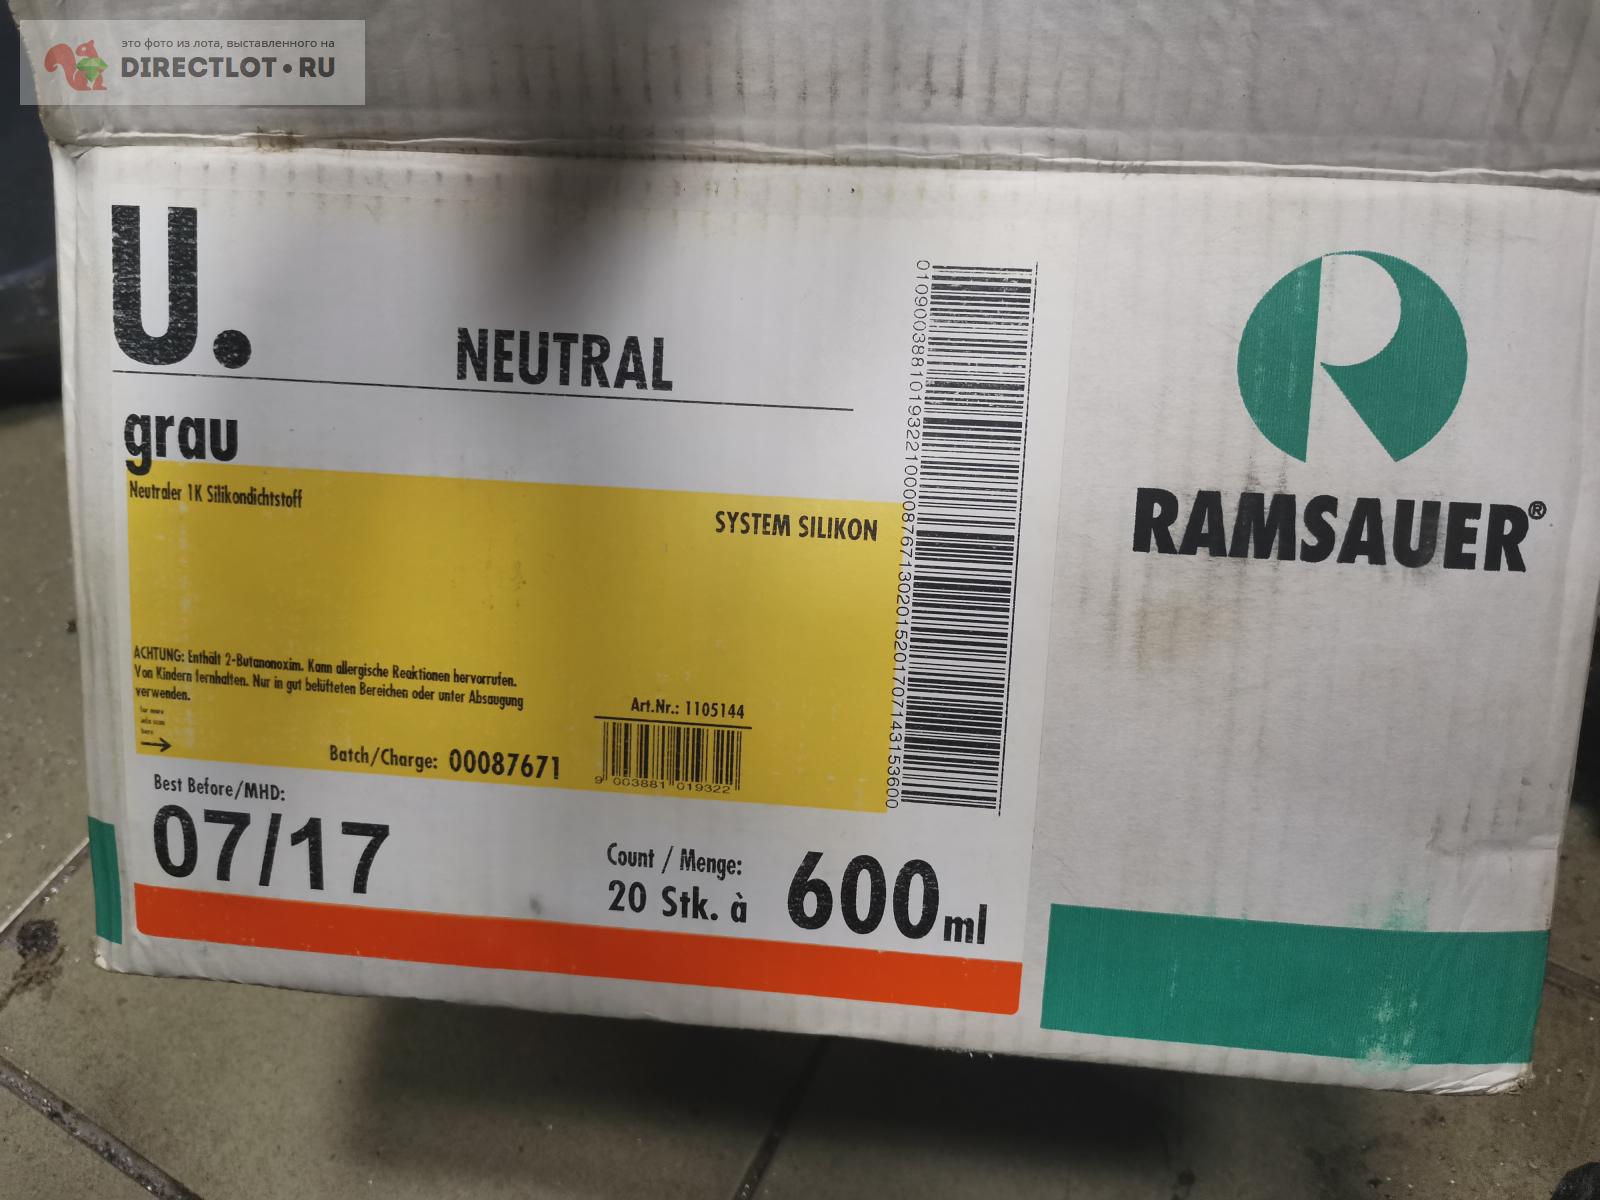 Герметик силиконовый Ramsauer  в Тюмени цена 300 Р на DIRECTLOT .